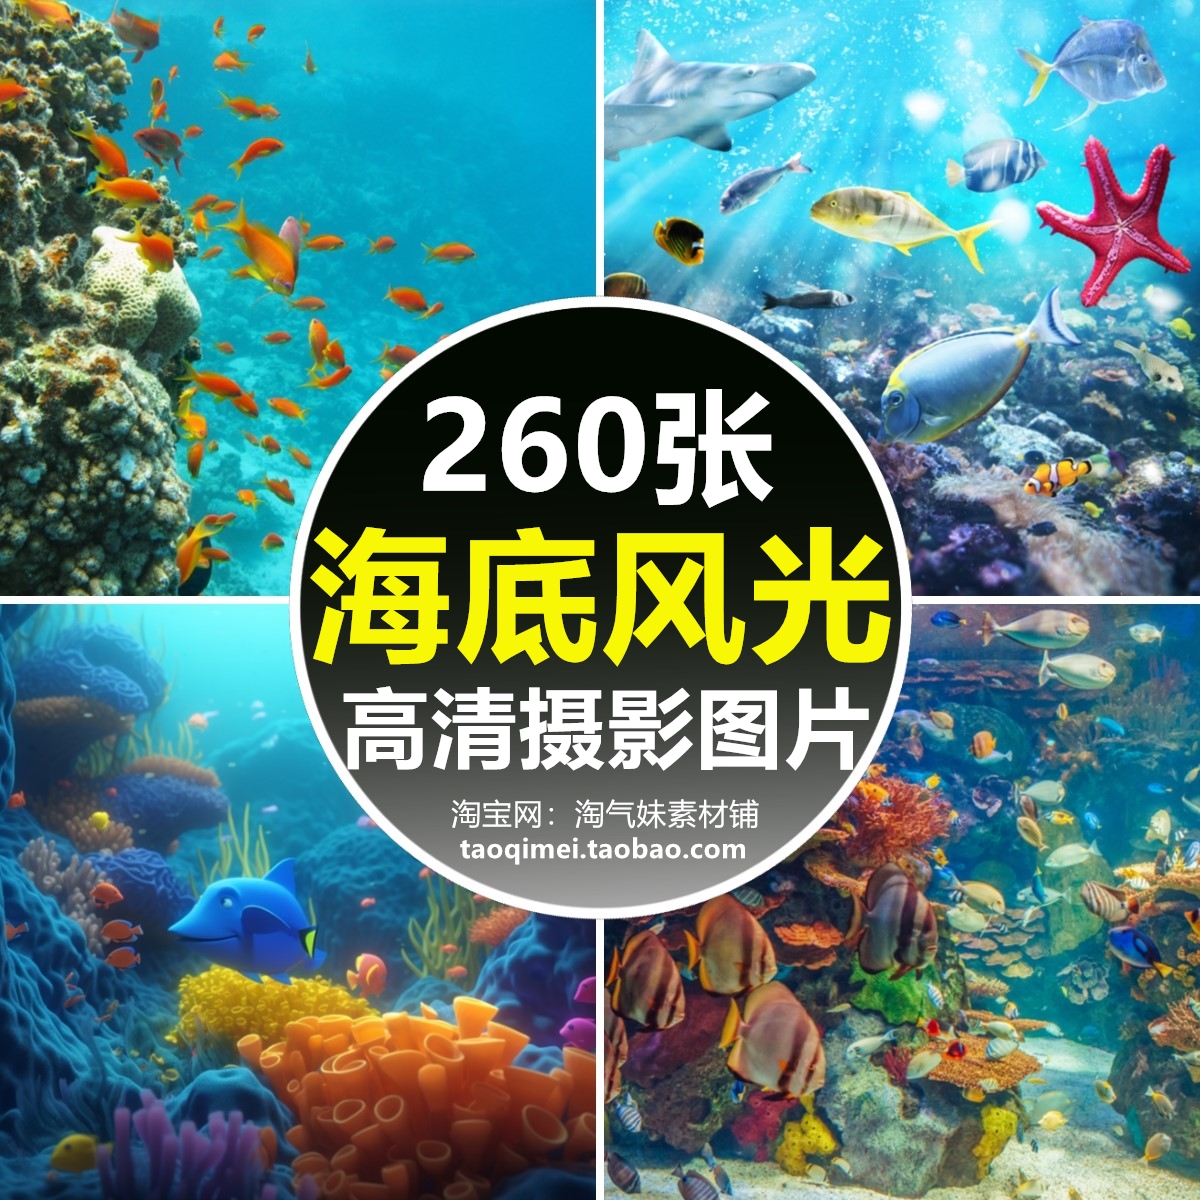 高清JPG海底世界图片深海洋水底生物珊瑚海龟鱼类水族馆摄影素材